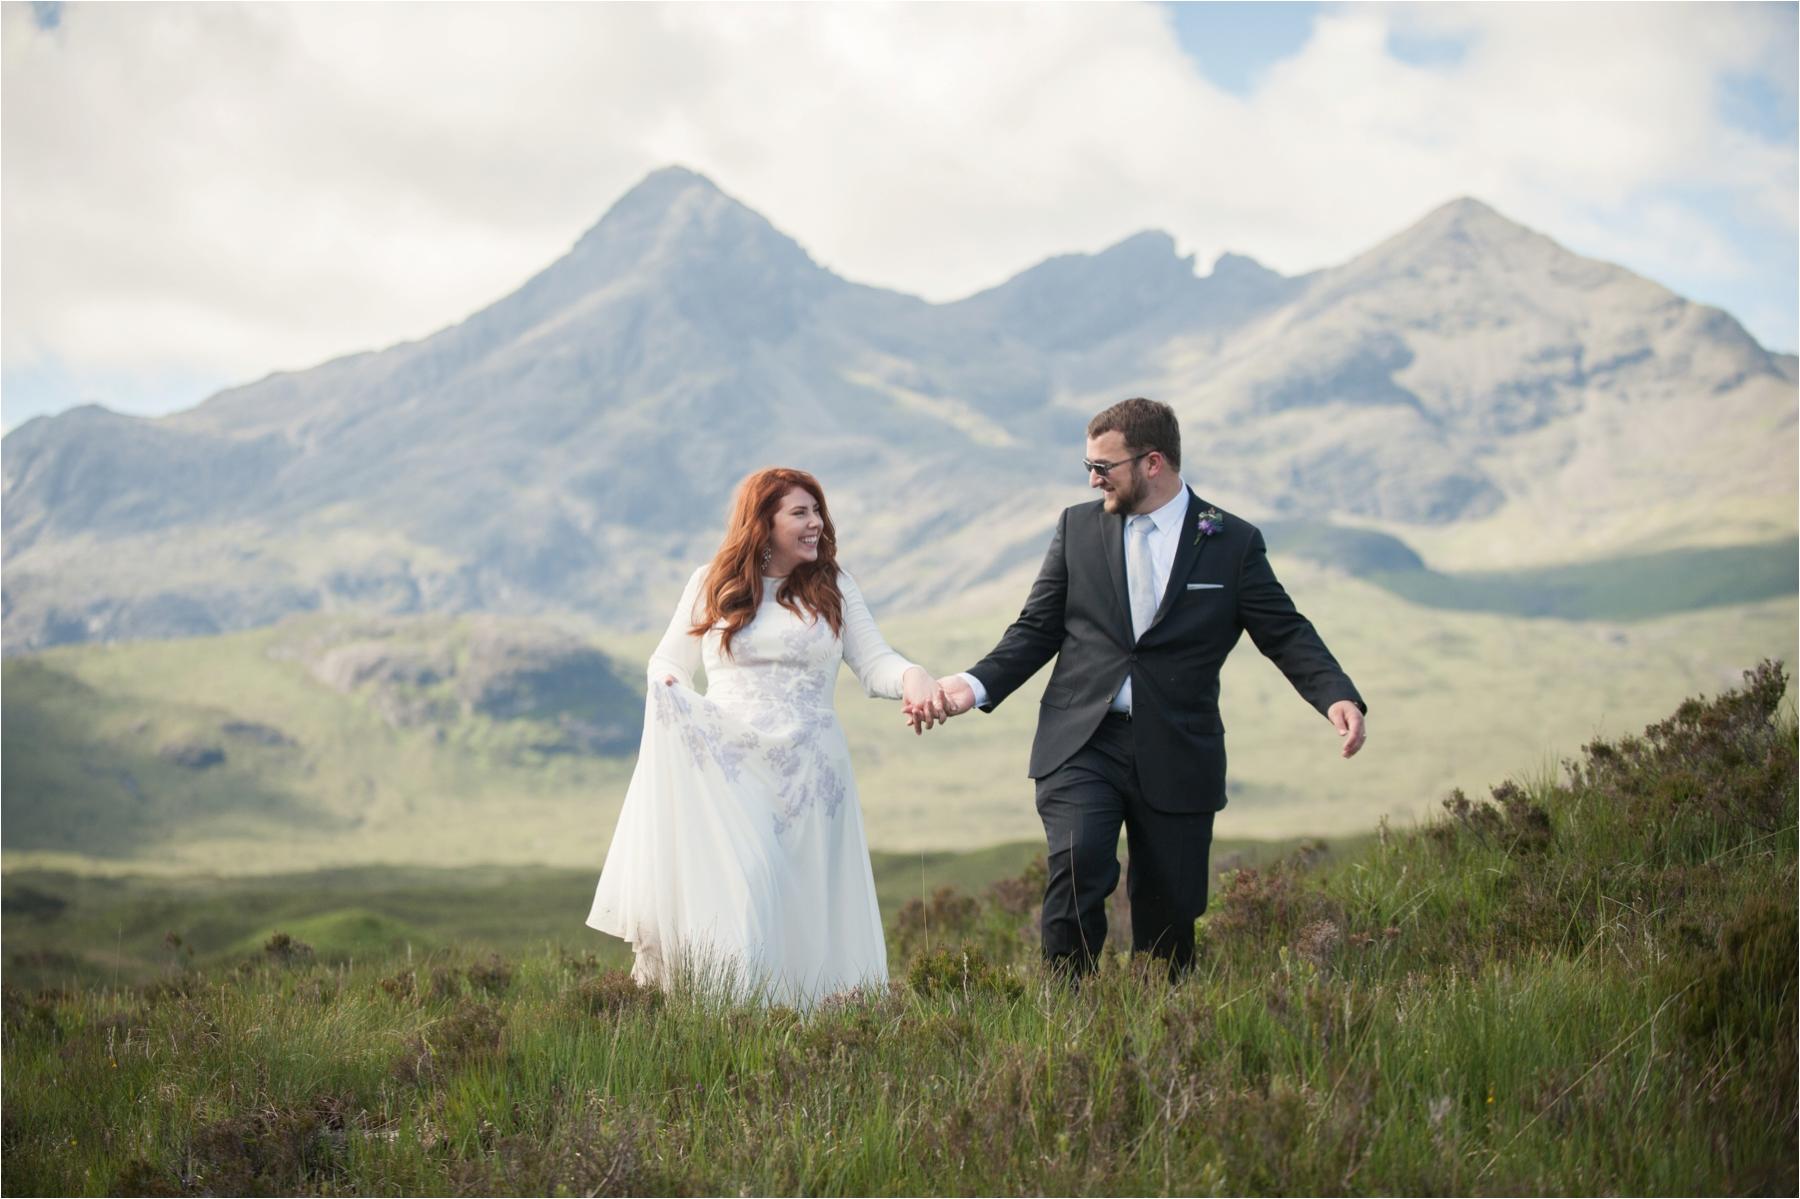 Sophia & Lou’s Isle of Skye wedding